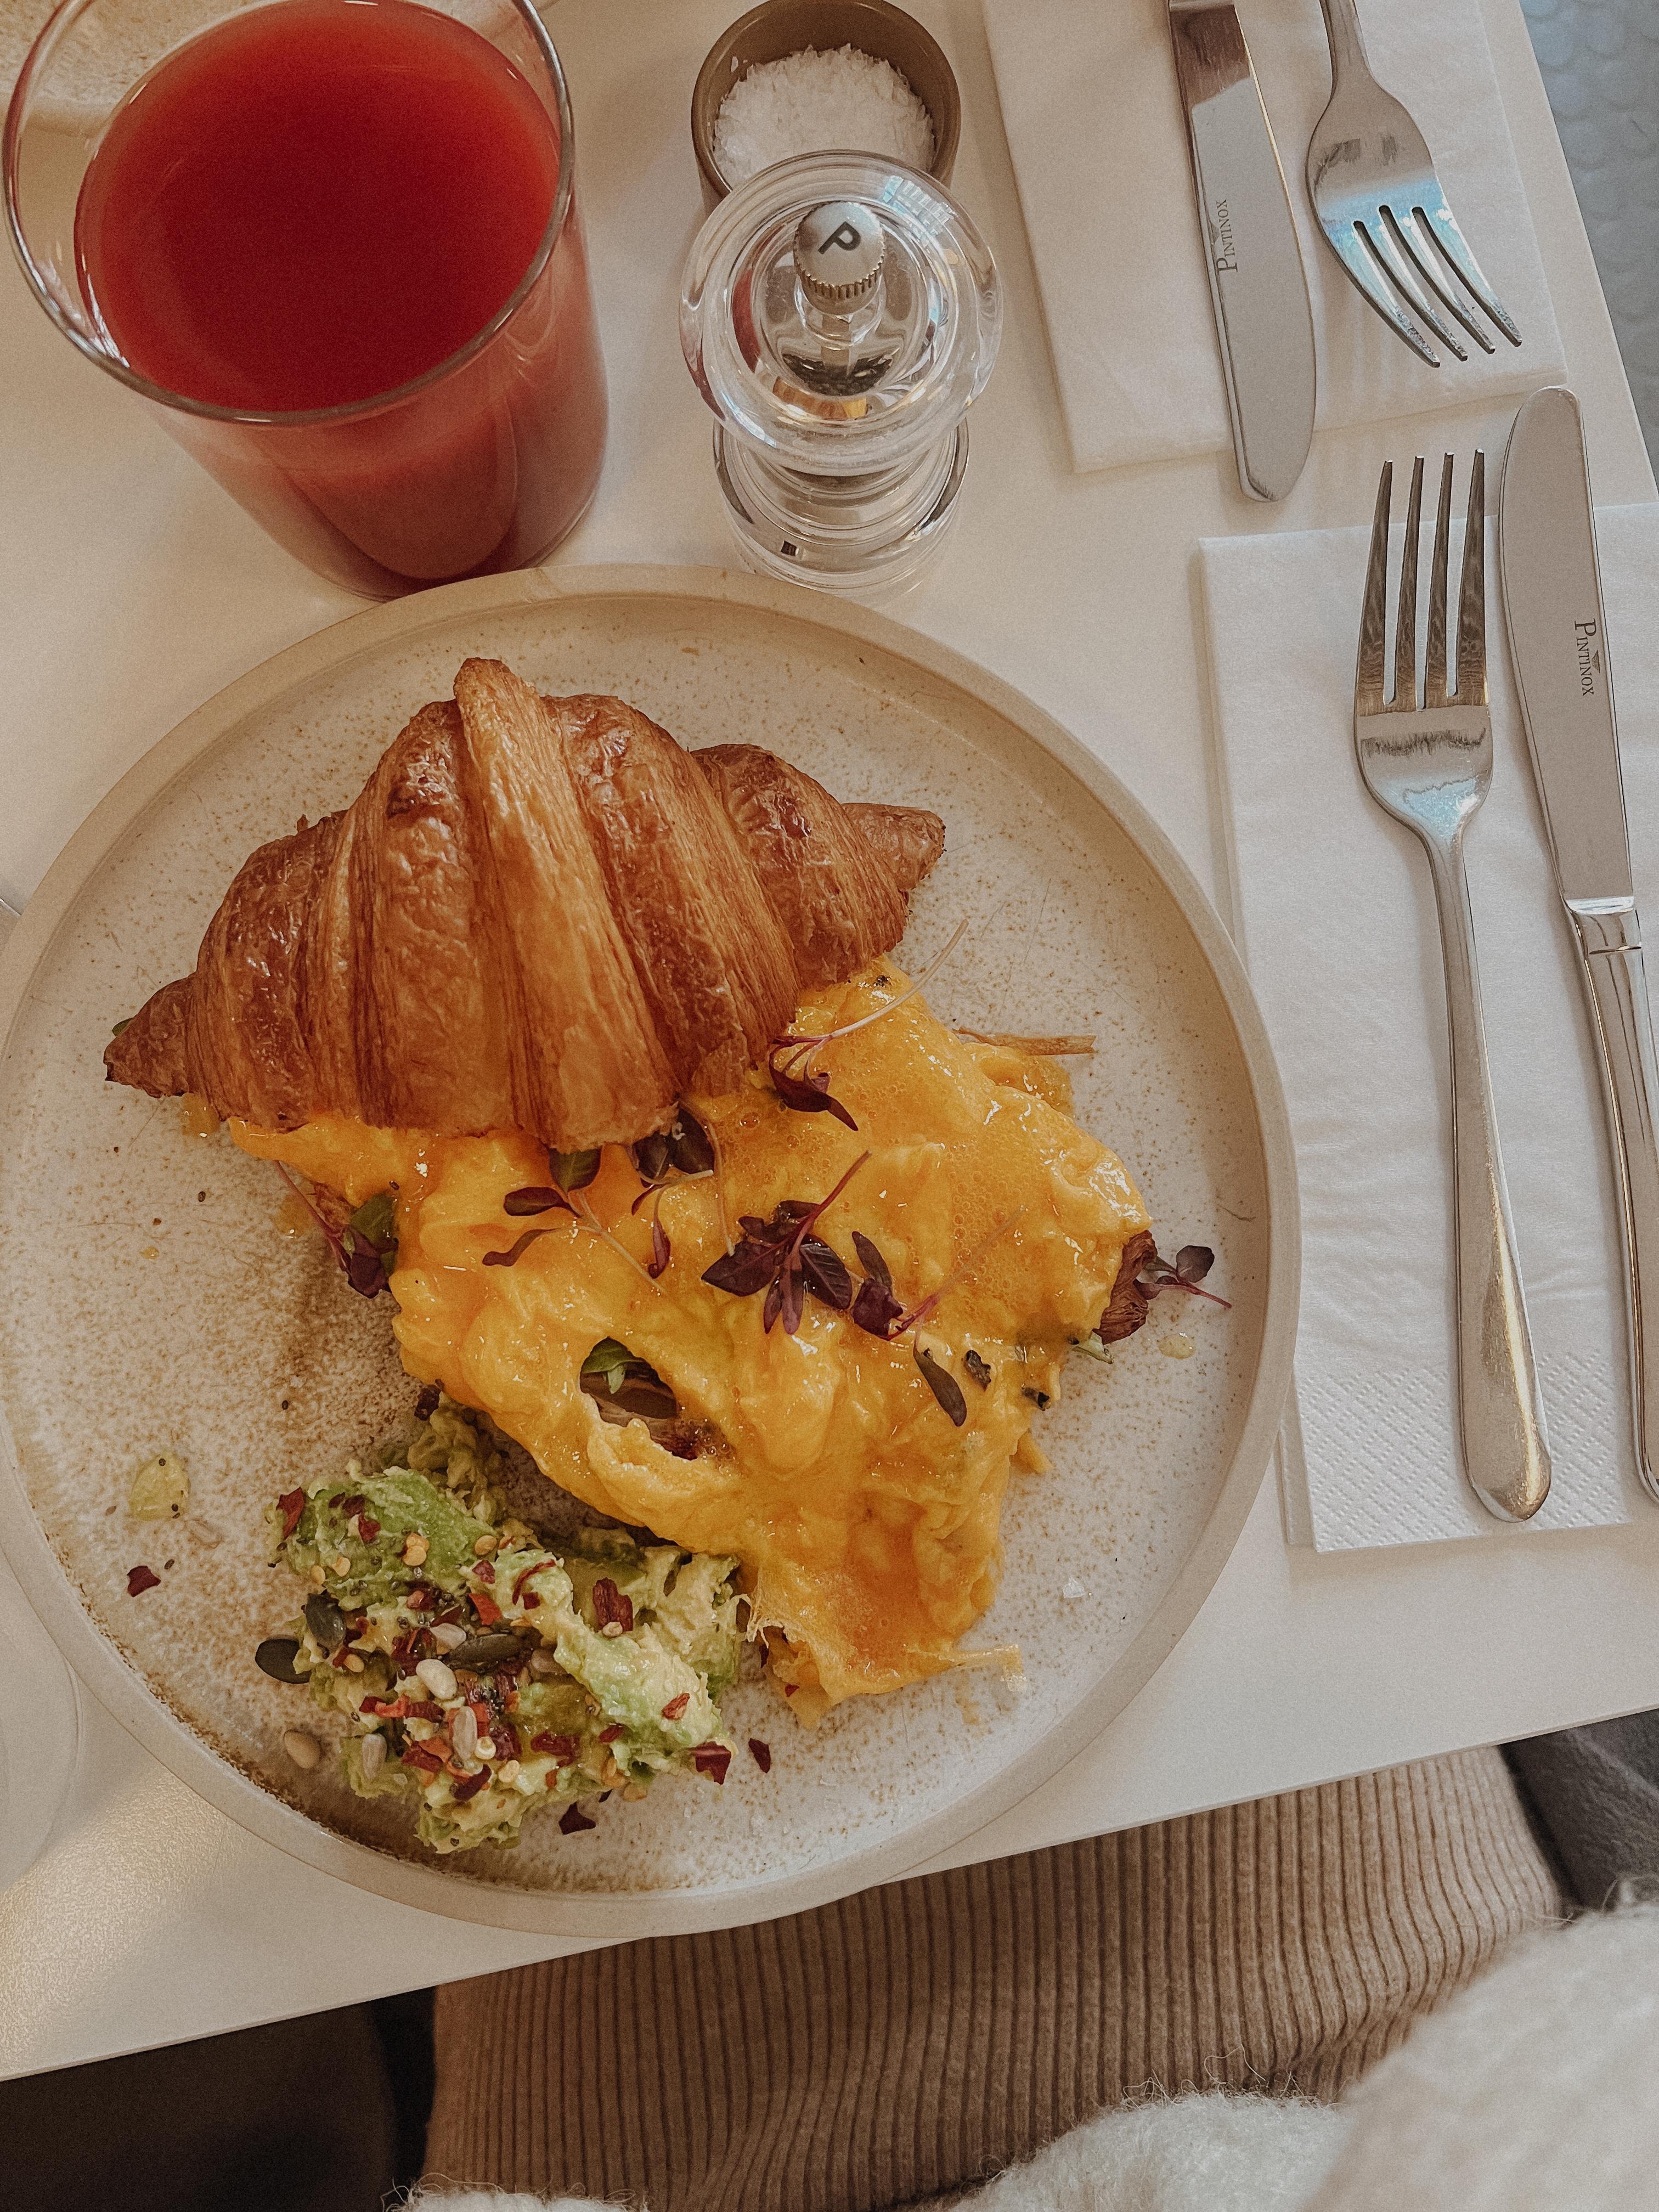 🥐 + 🥑 + Trüffel-Rührei = Match made in heaven! #breakfast #London #foodlover